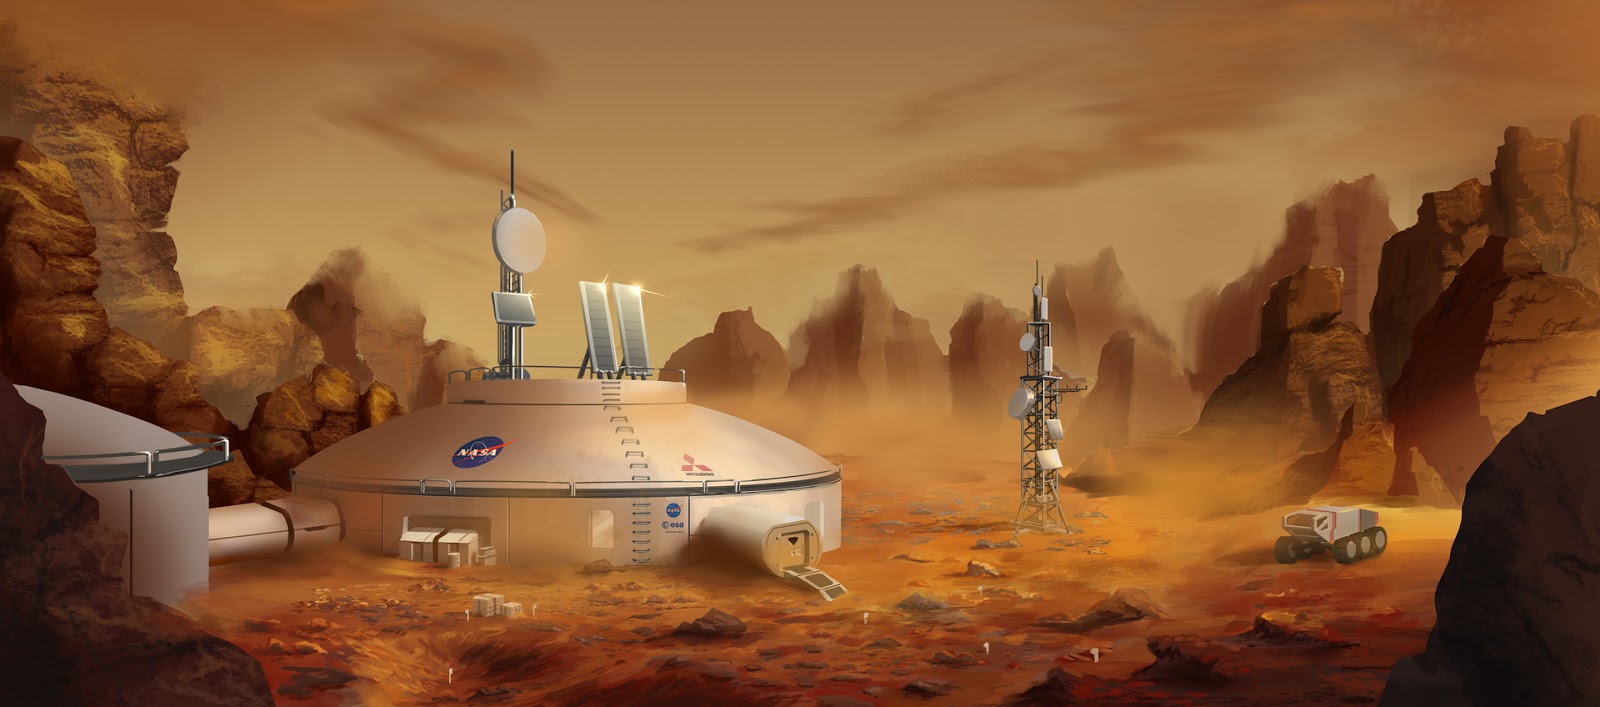 NASA Mars base concept by Alexey Rubakin